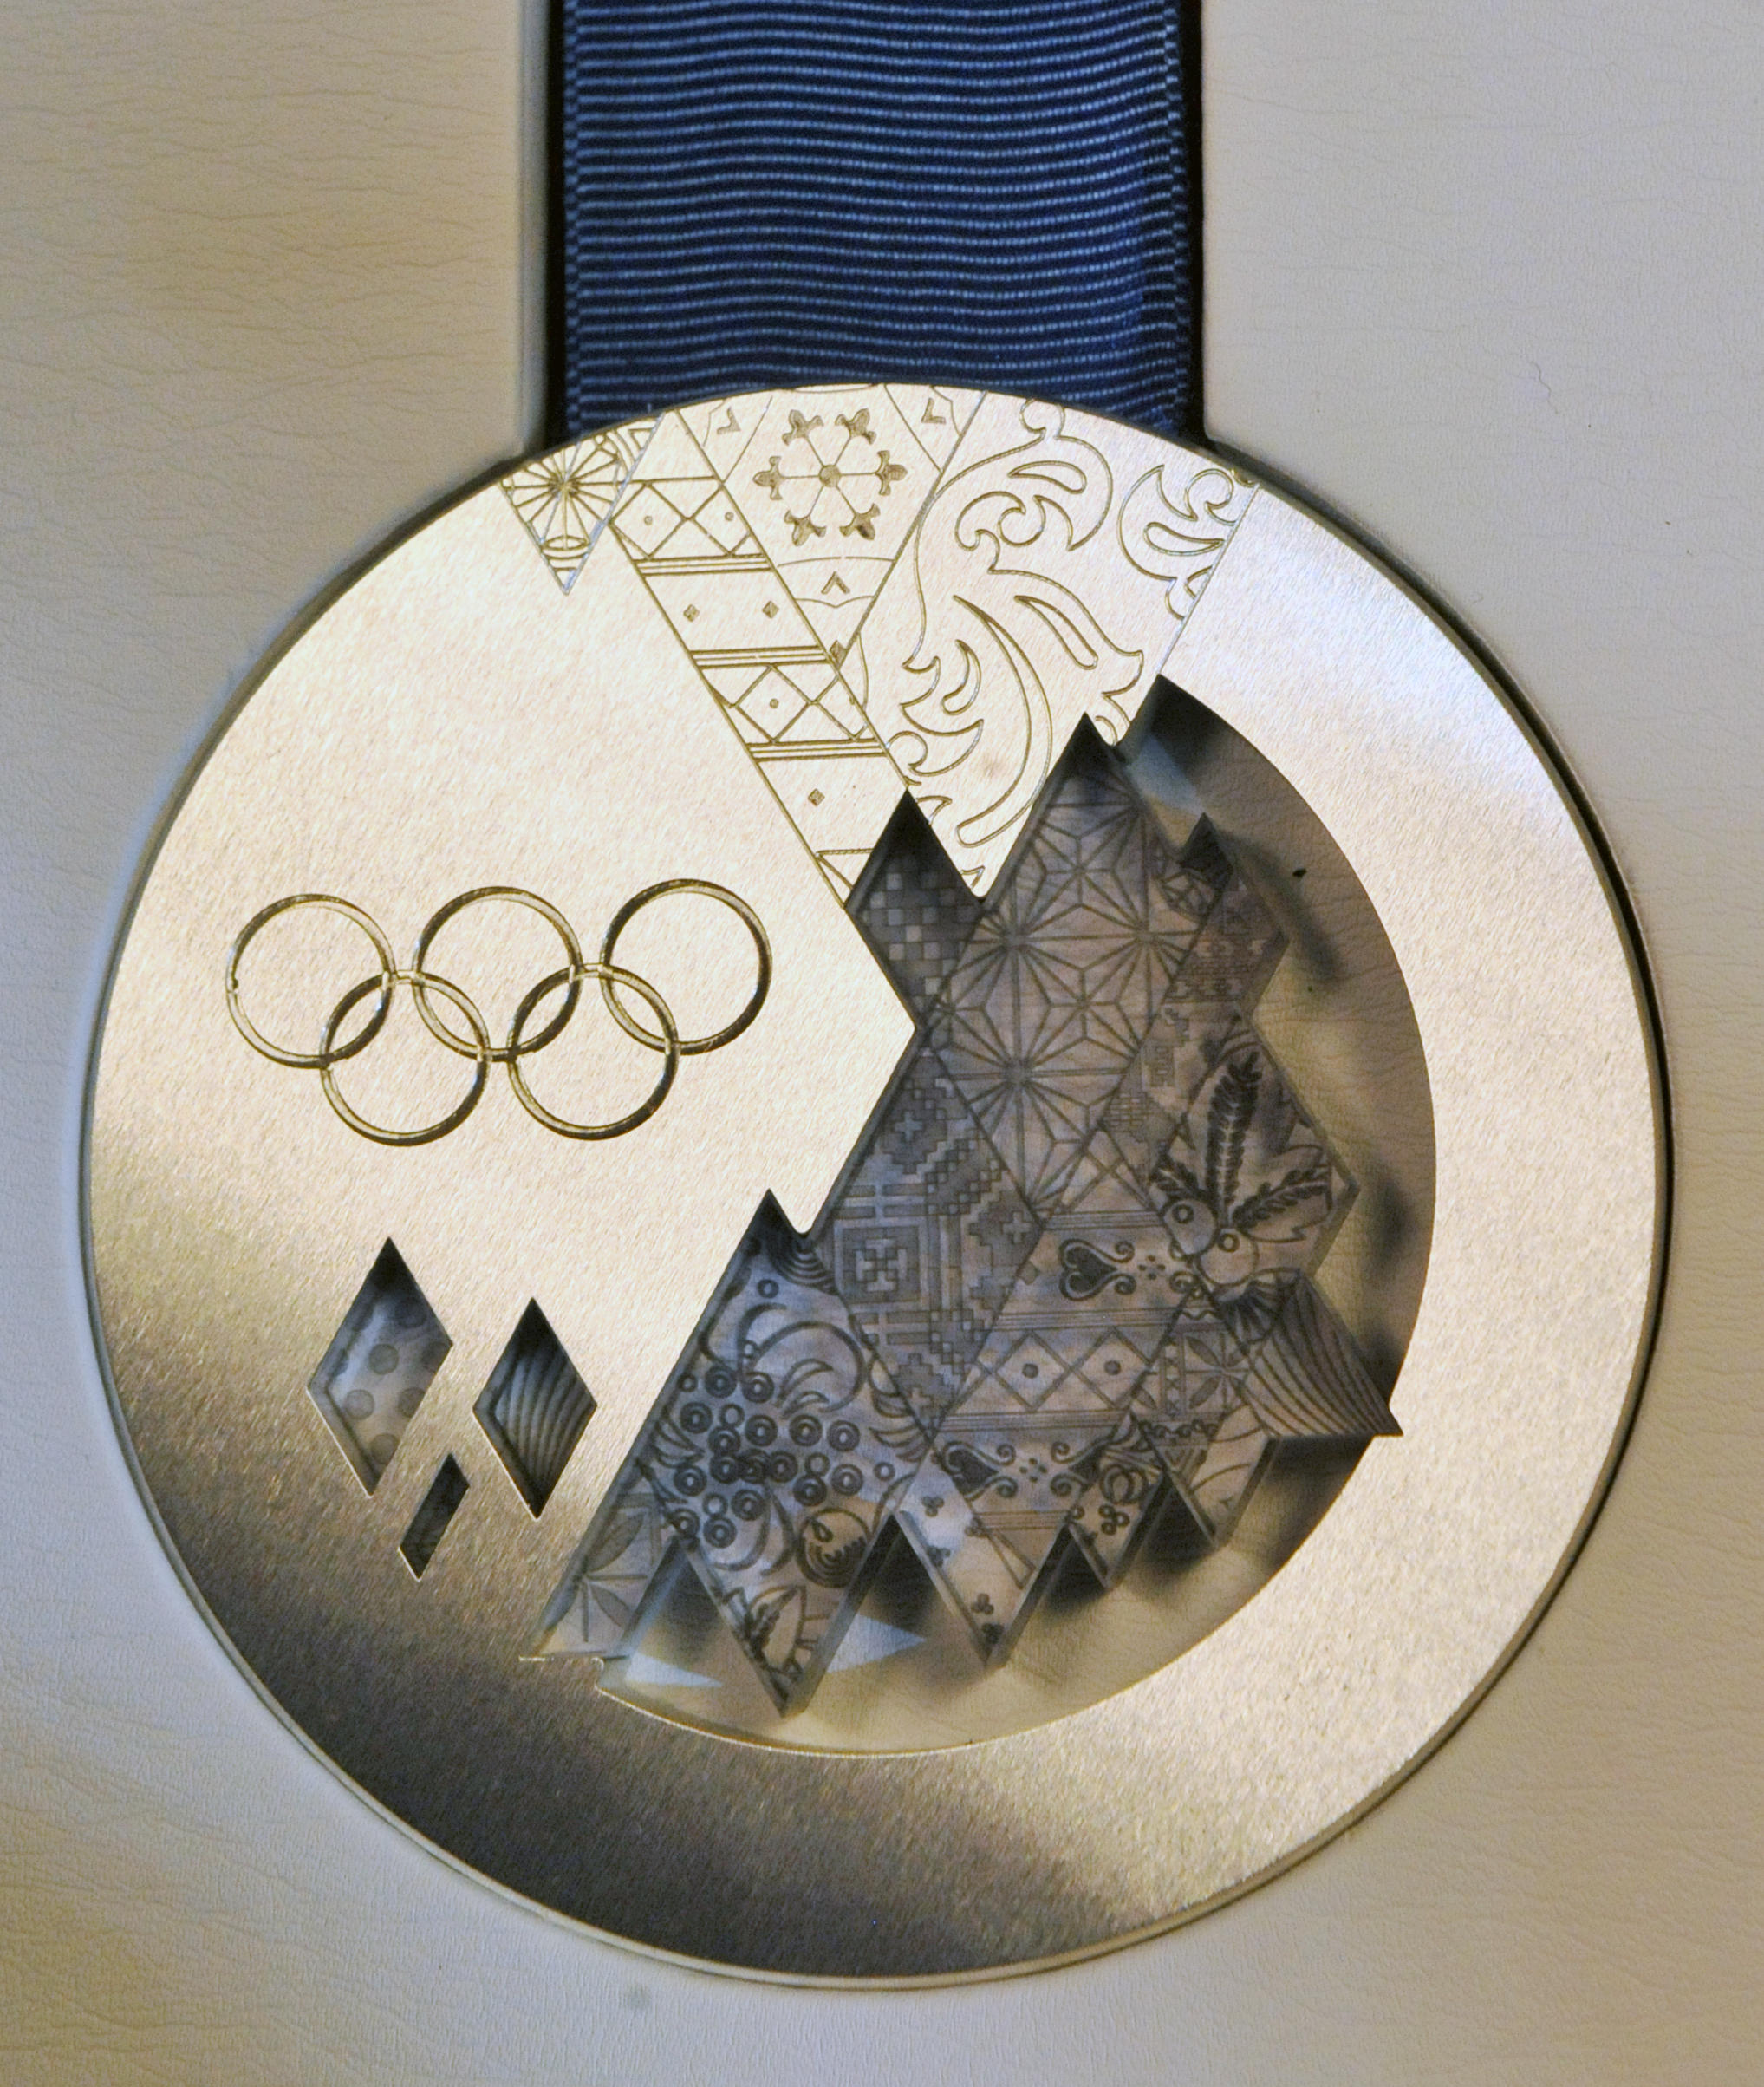 Олимпийская медаль 2014 года. Олимпийские медали Сочи 2014. Олимпийские игры в Сочи 2014 медали. Krieghoff k-80 Олимпийские медали. Серебряная медаль Олимпийских игр 2014.